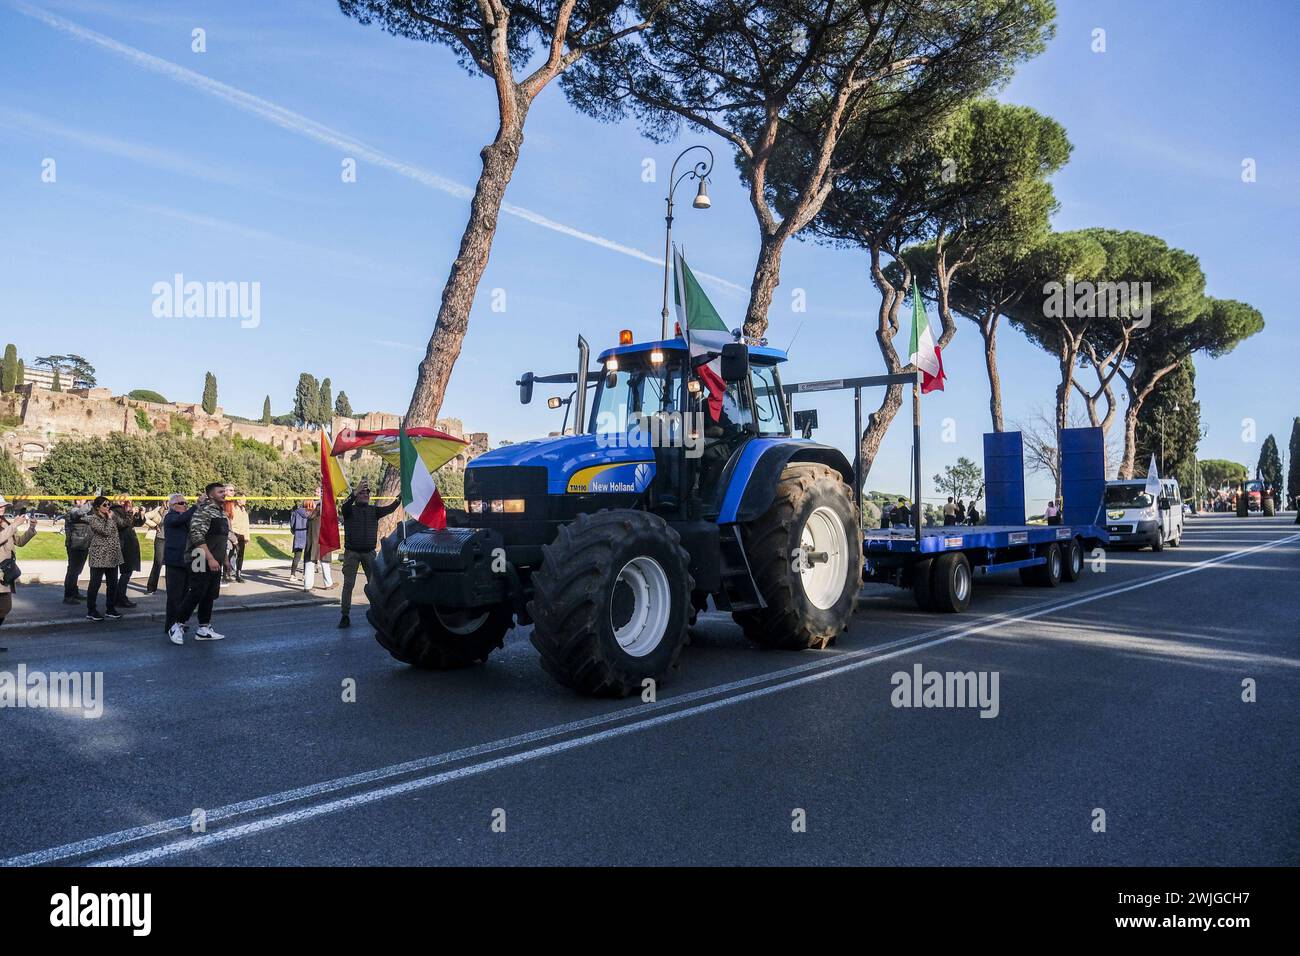 Notizie - dimostrazioni degli agricoltori a Roma gli agricoltori organizzano dimostrazioni in tutta Italia per settimane per chiedere tasse più basse sul carburante, prezzi migliori per i loro prodotti, e un allentamento delle normative ambientali dell'UE che, secondo loro, rendono più difficile competere con prodotti stranieri meno costosi. Oggi, 15 febbraio 2024, si sono riuniti in una manifestazione nazionale a roma al circo massimo e al campidoglio.& XA Roma Italia Copyright: XAntonioxBalascox/xLiveMediax LPN 1237674 Foto Stock